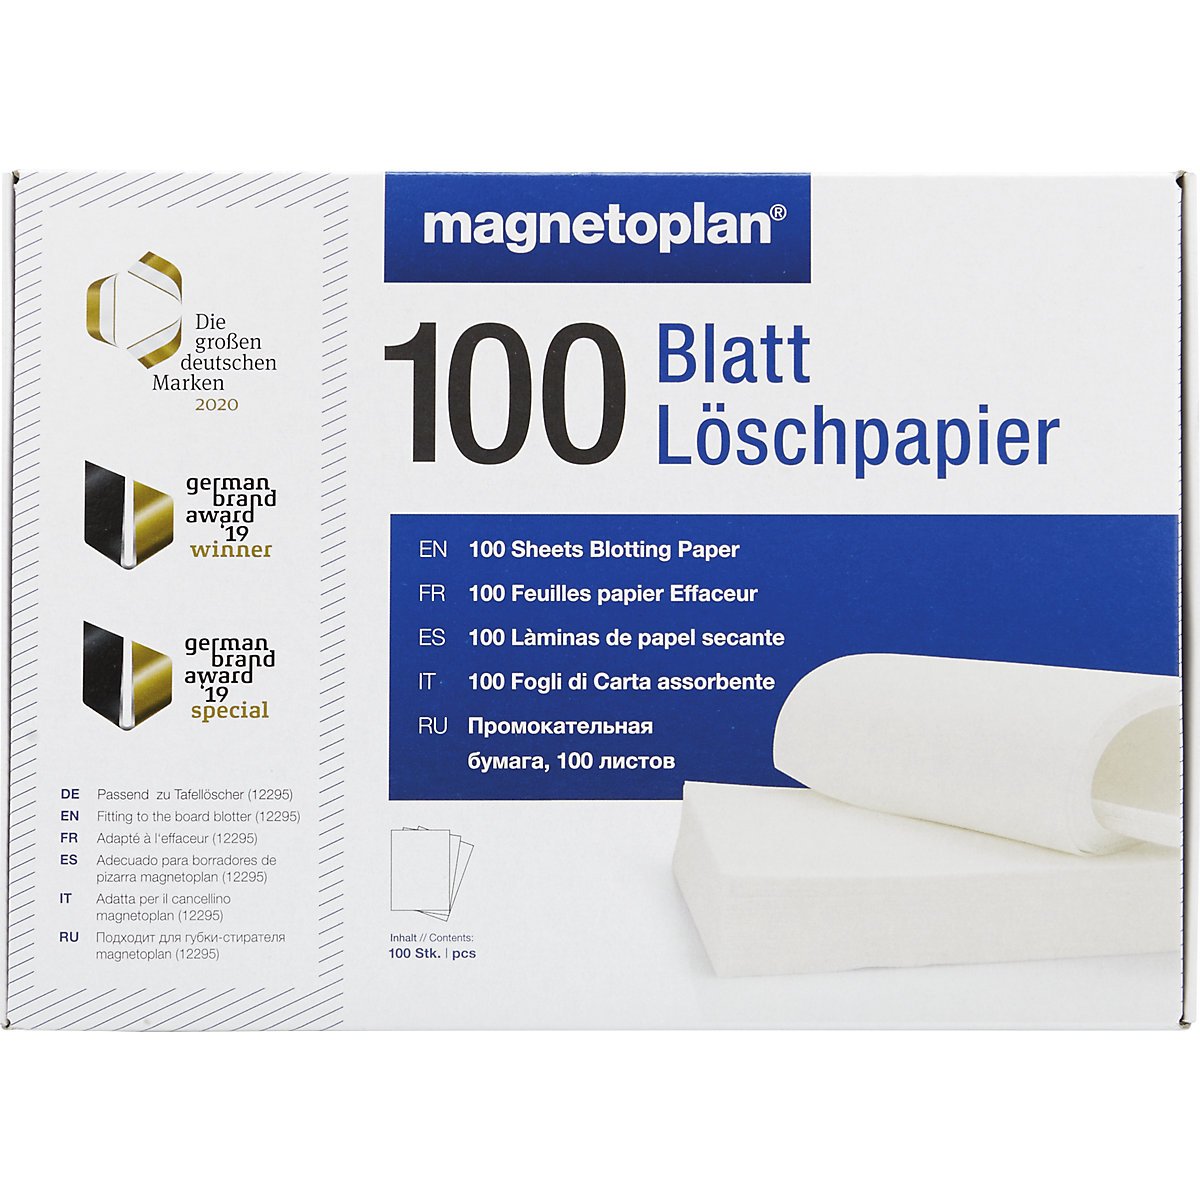 ferroscript® Löschpapier magnetoplan